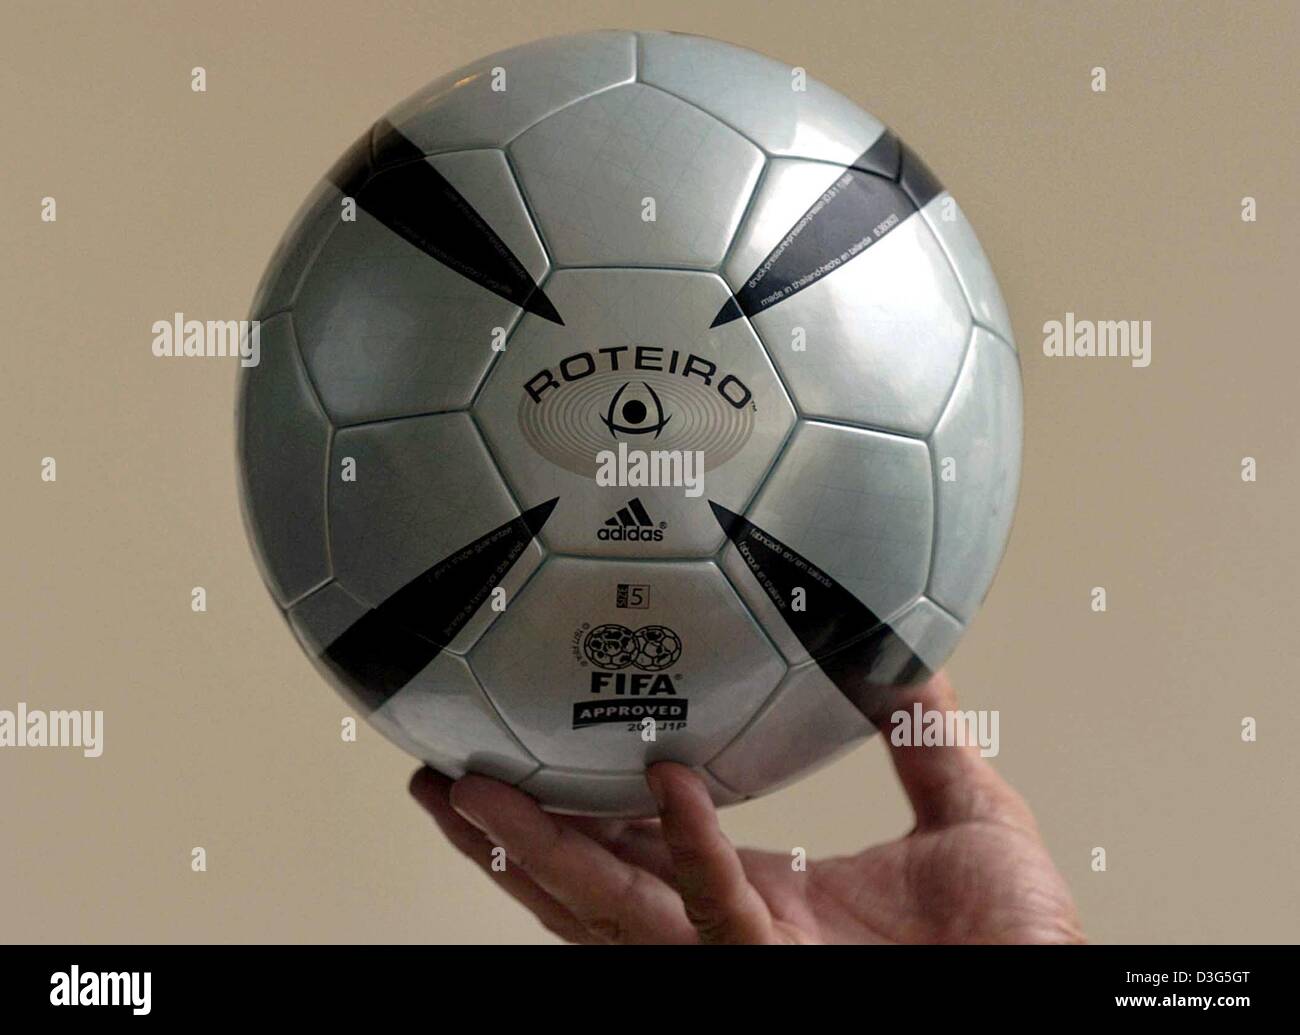 Dpa) - der offizielle Ball für die Euro 2004-Fußball-Europameisterschaft,  genannt "Roteiro", präsentiert sich in Almancil, in der Nähe von Faro,  Portugal, 28. November 2003. Die Auslosung für die WM-Gruppenspiele fand am  30.